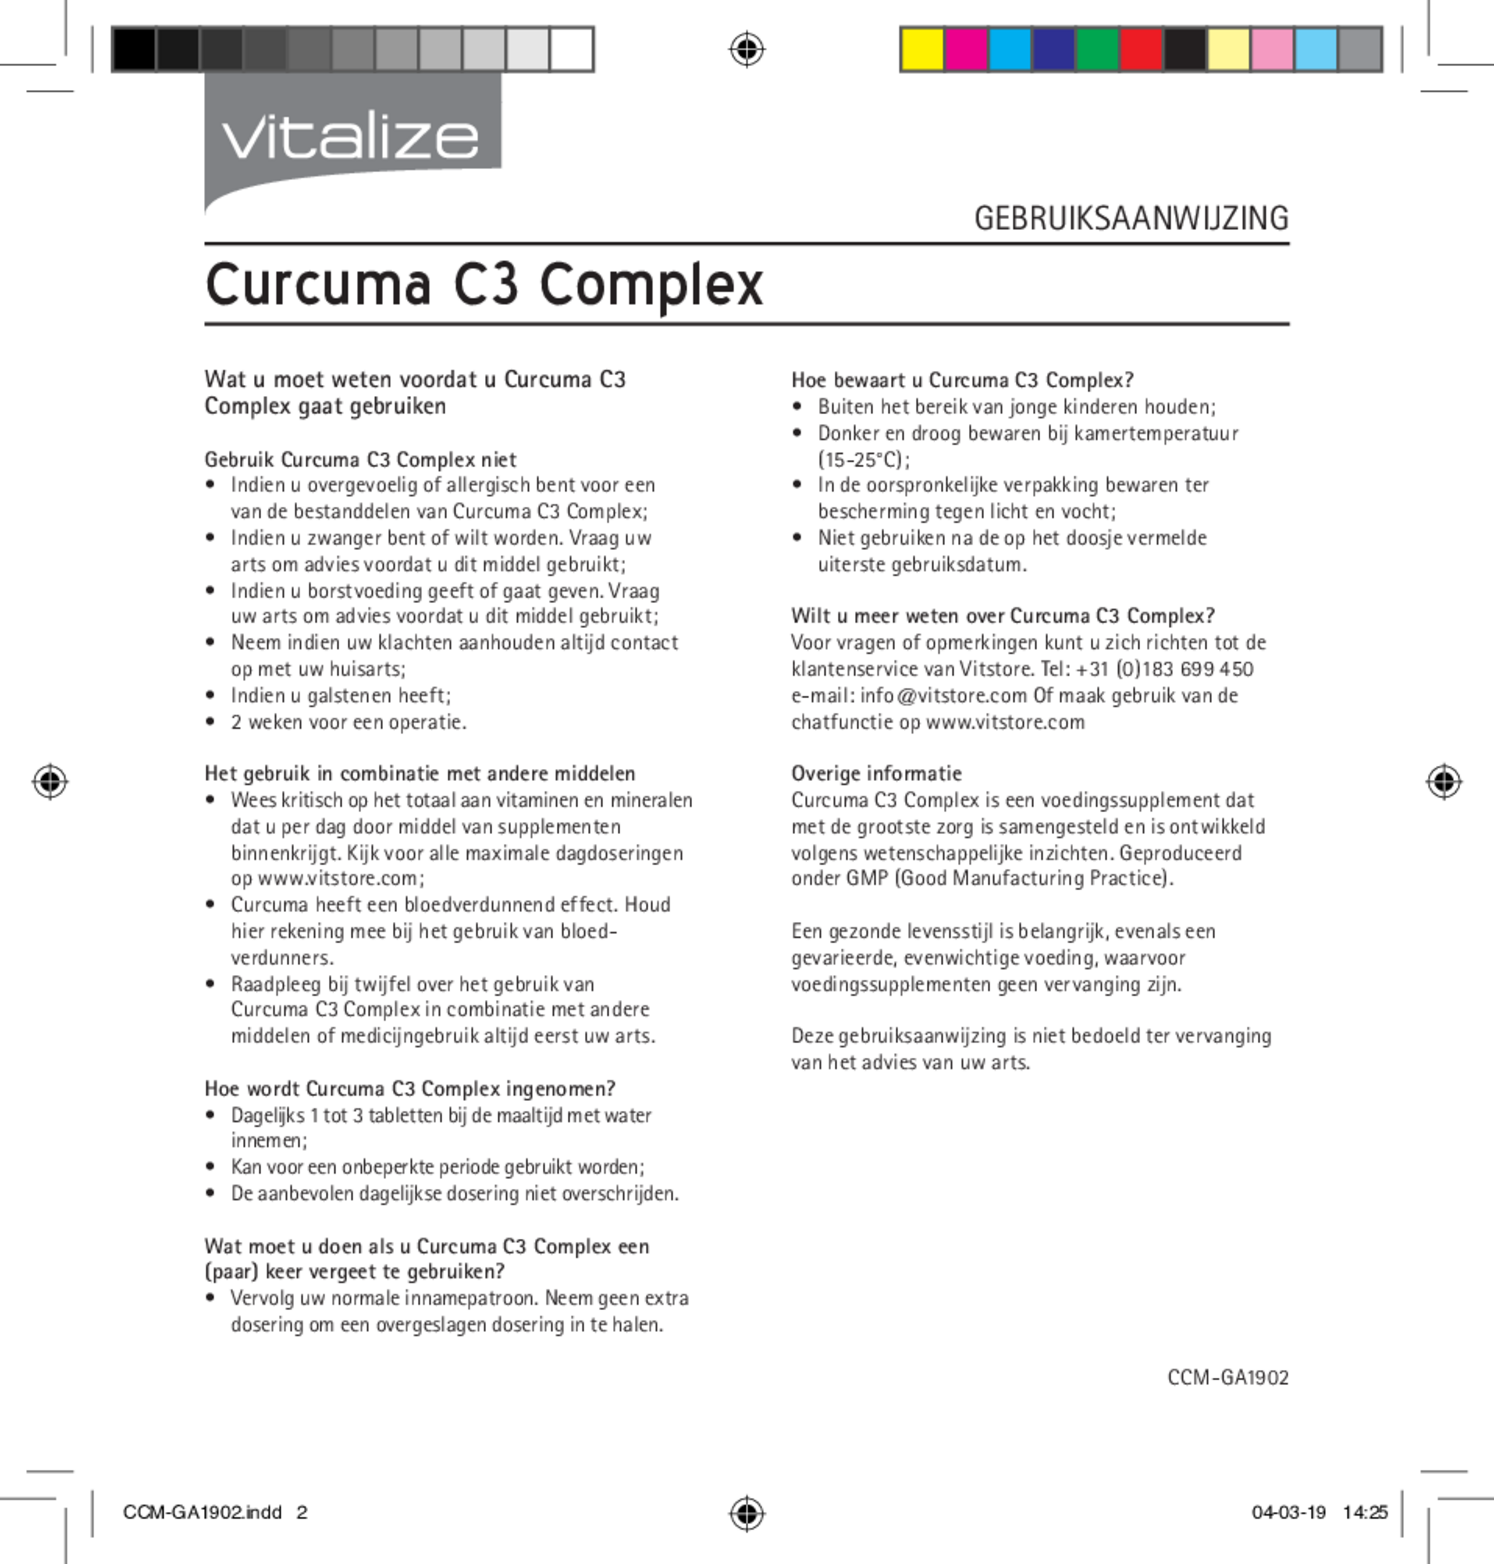 Curcuma C3 Complex Tabletten Voordeelverpakking afbeelding van document #2, gebruiksaanwijzing